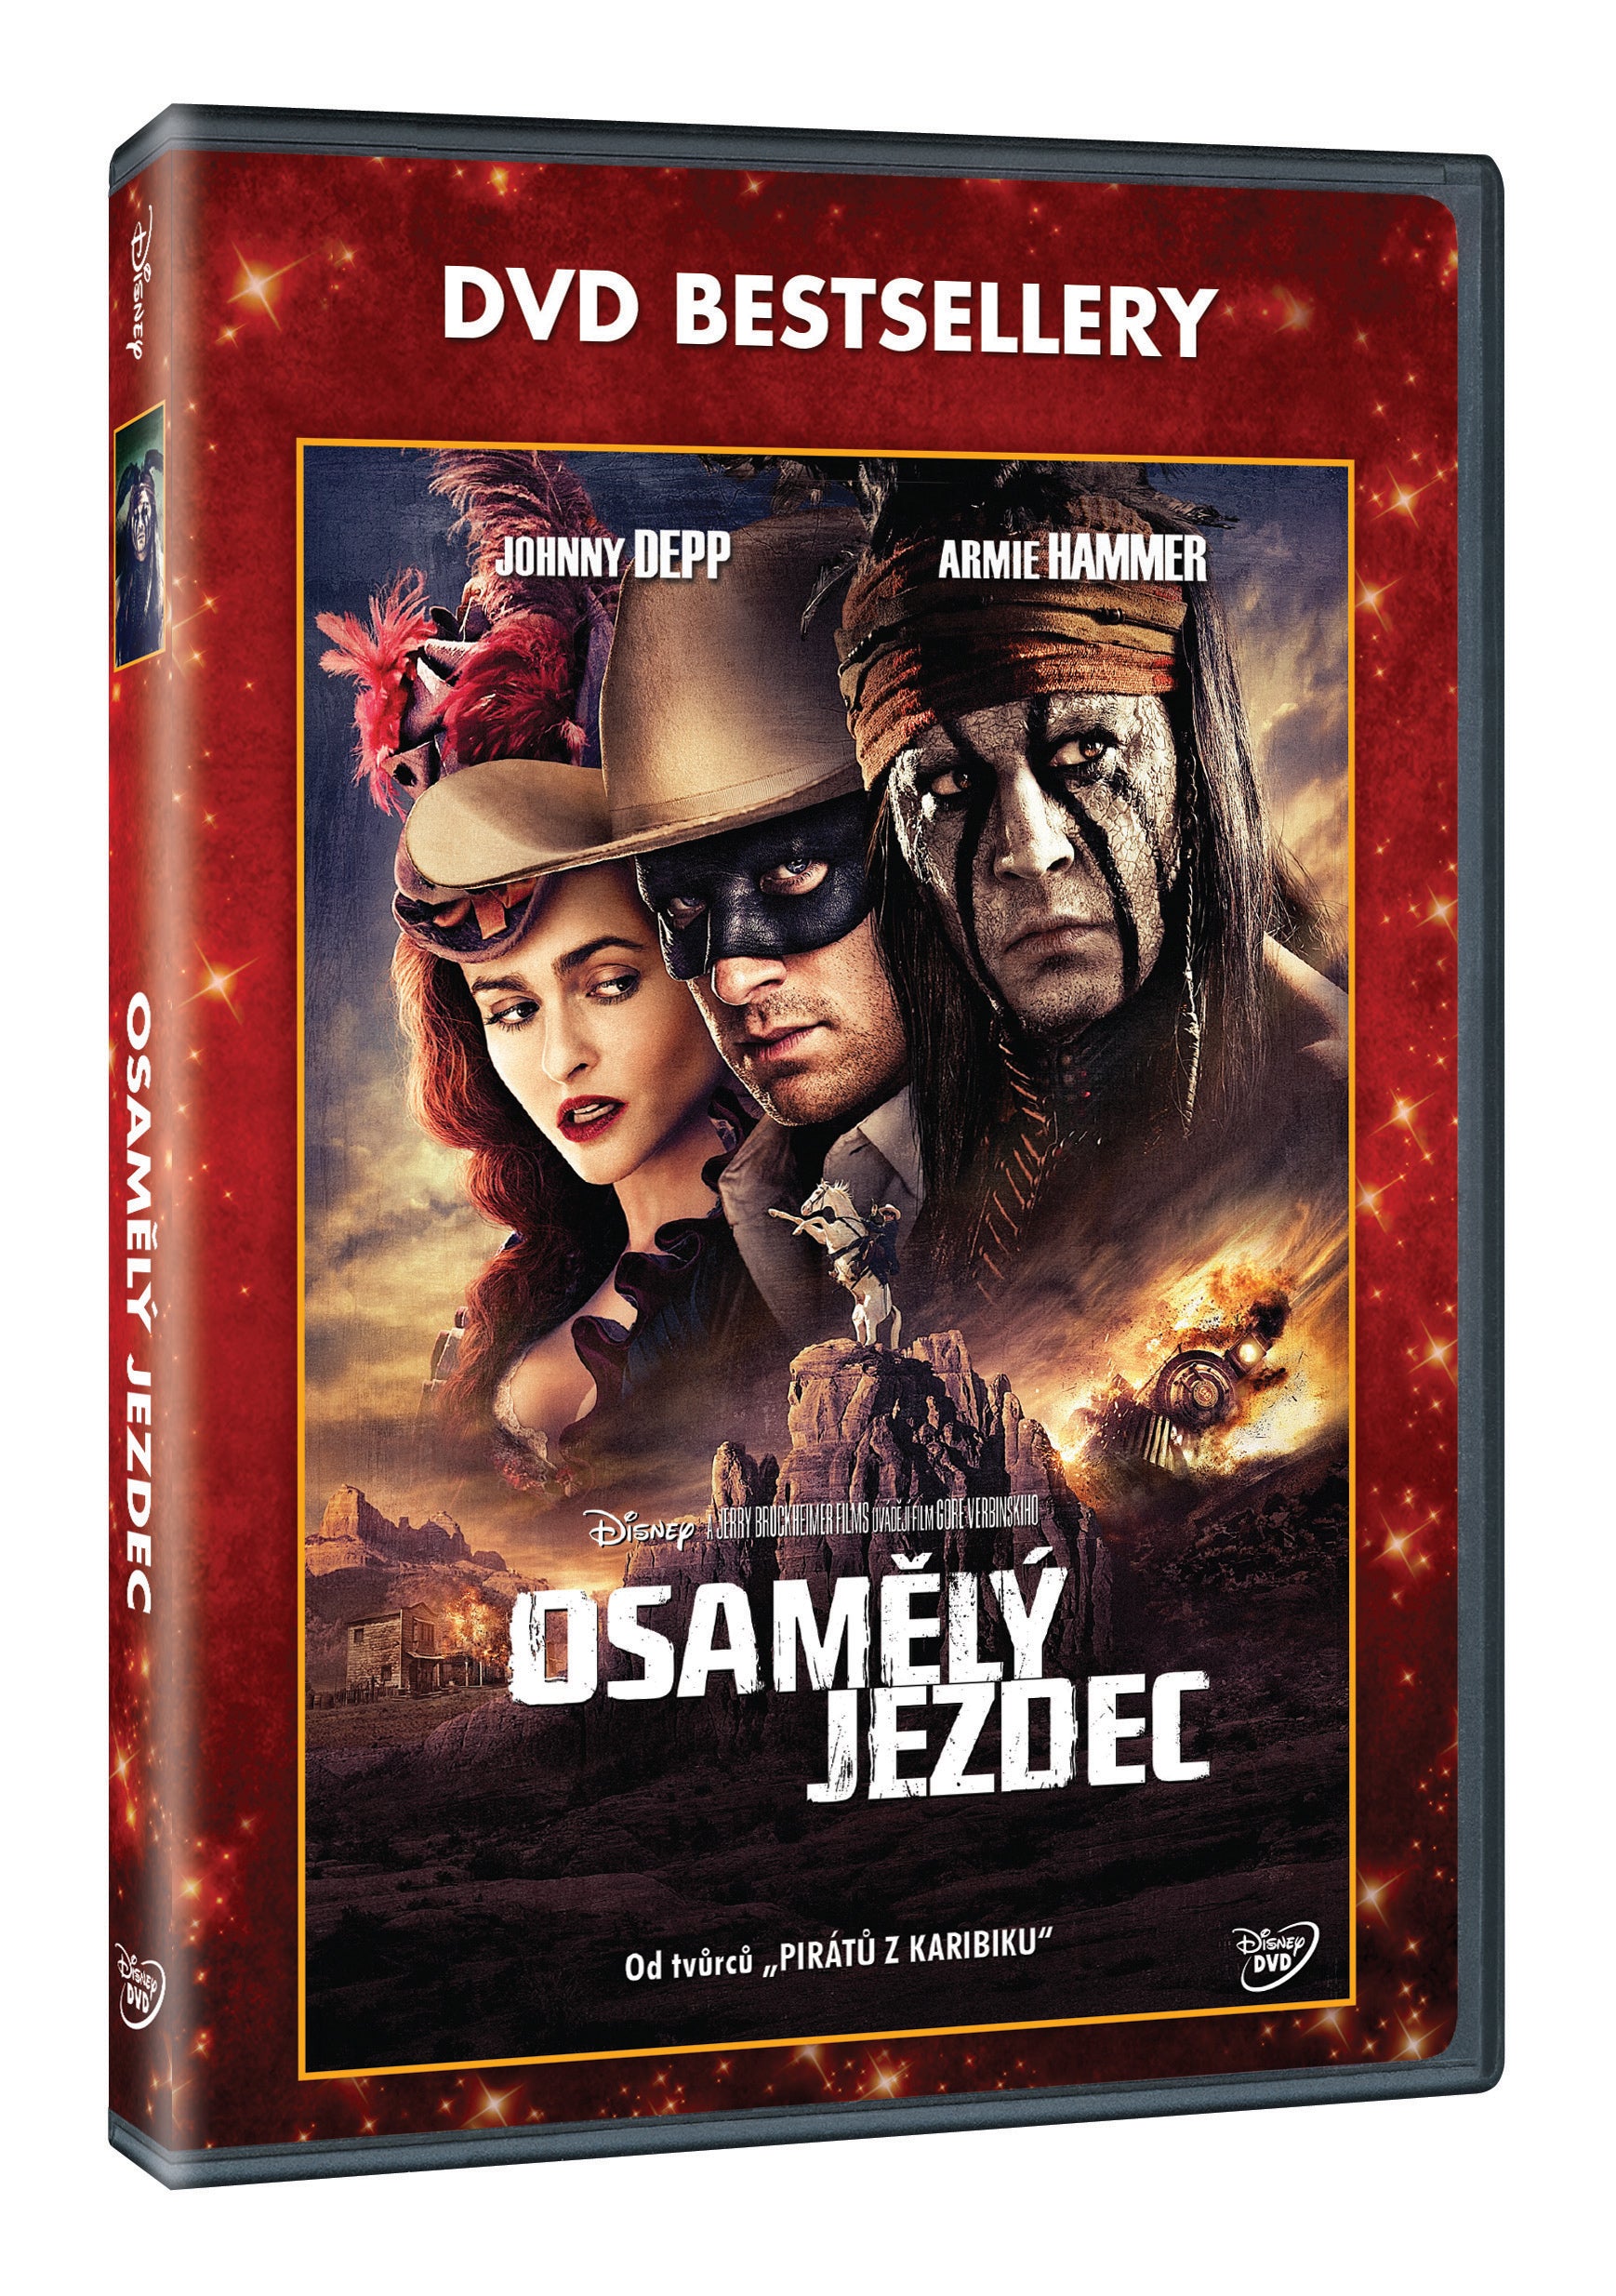 Osamely jezdec – DVD-Bestseller (The Lone Ranger)